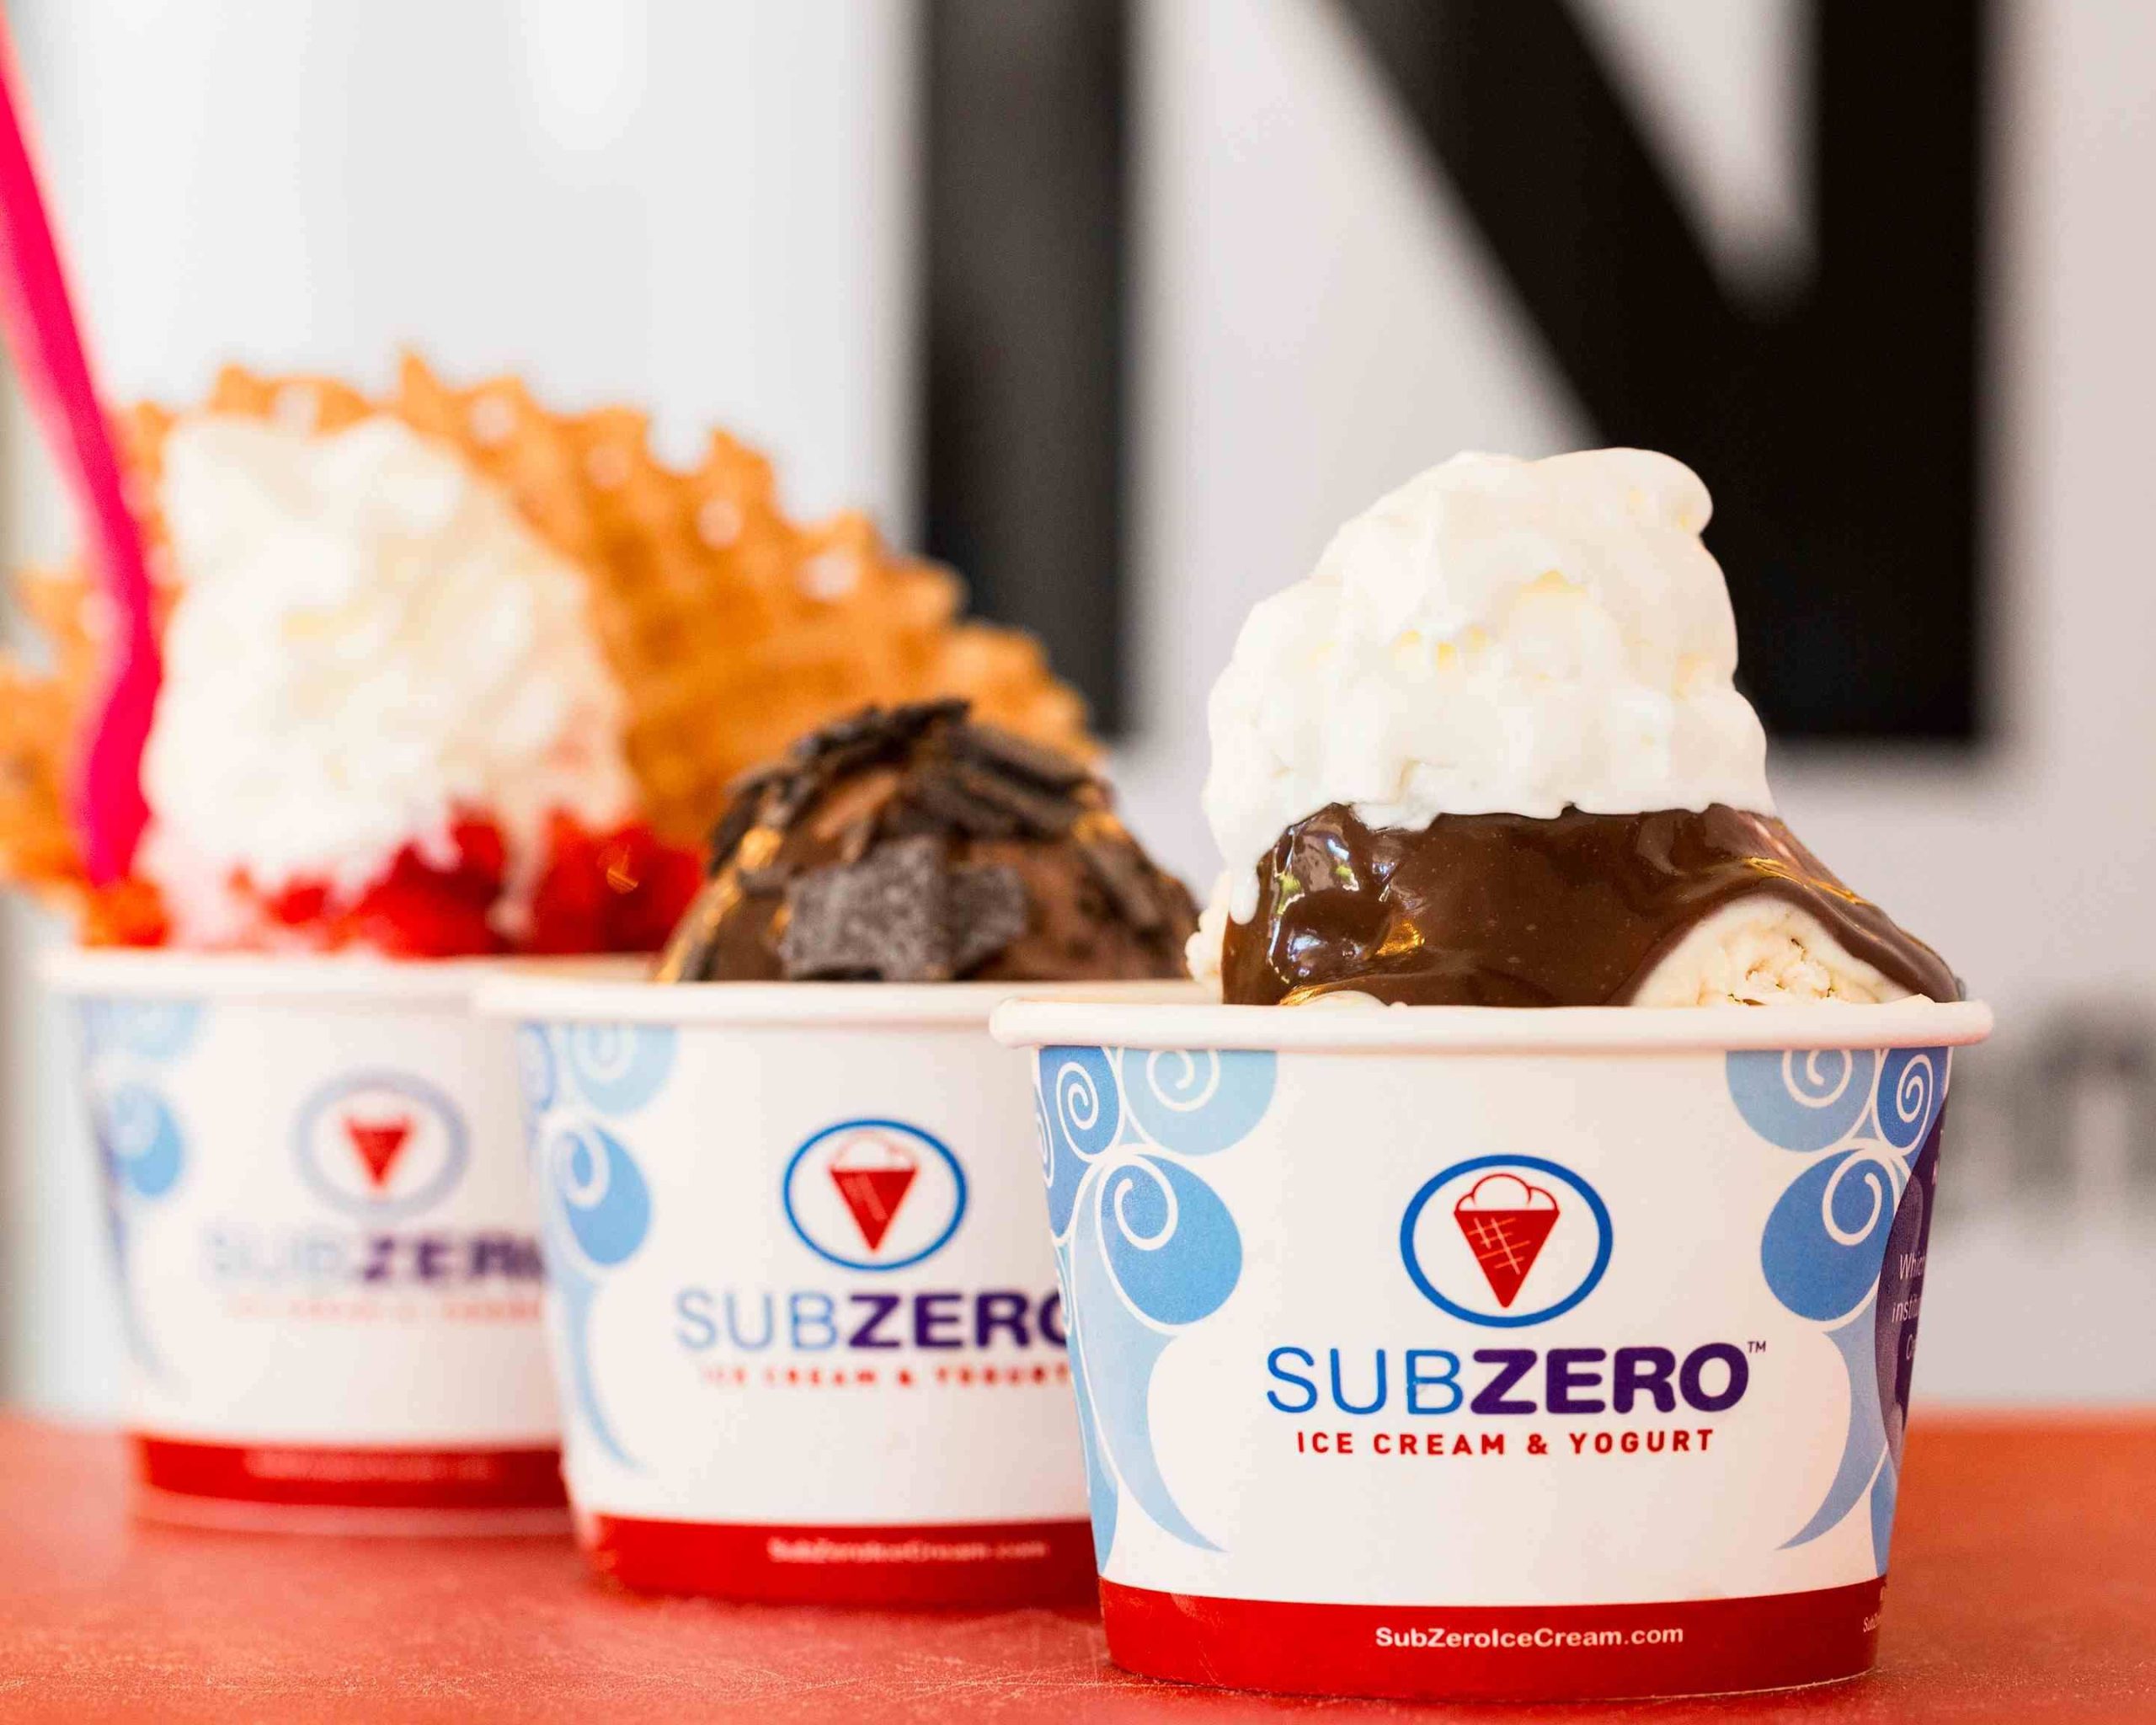 Sub Zero Ice Cream & Yogurt